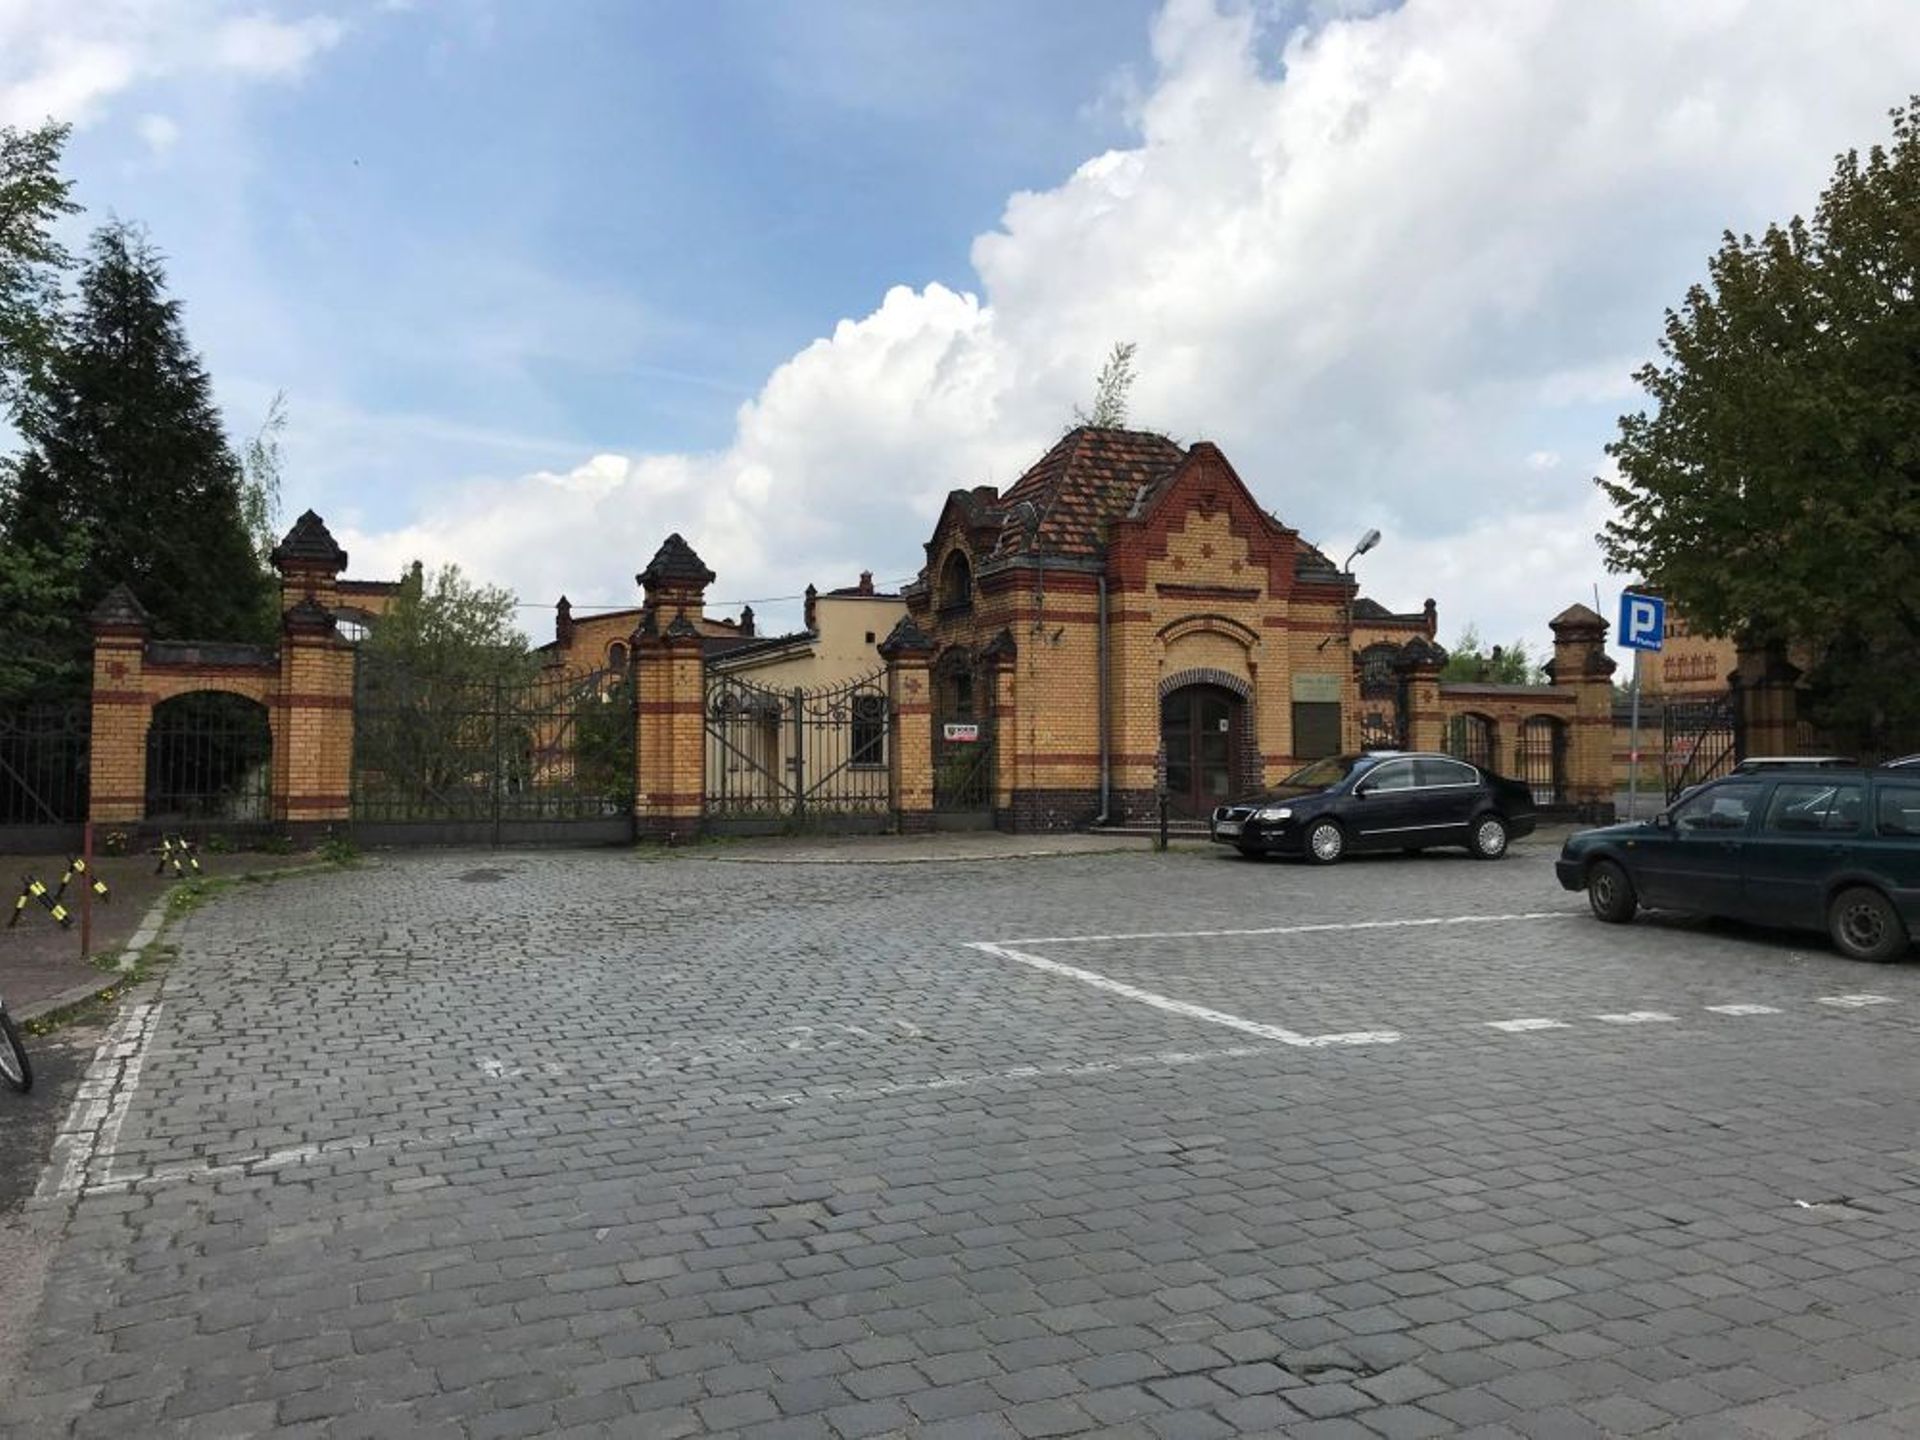  Zabytkowy teren przy ulicy Garbary w Poznaniu zostanie zrewitalizowany